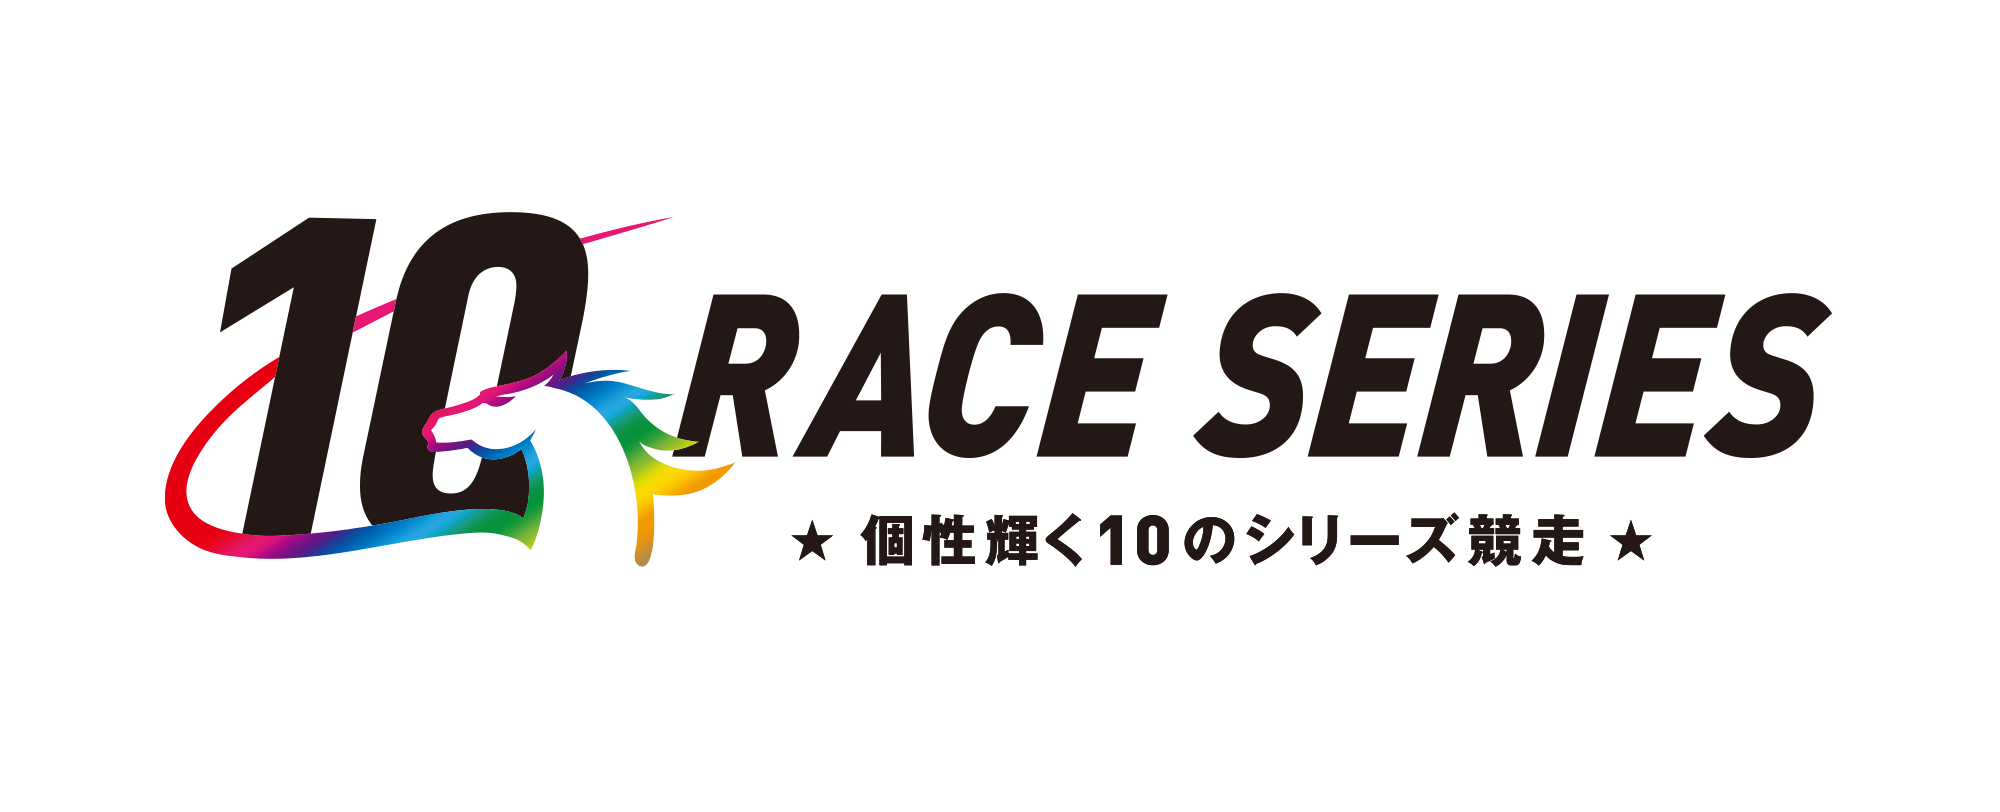 シリーズ競走特設サイト -10 RACE SERIES- 地方競馬